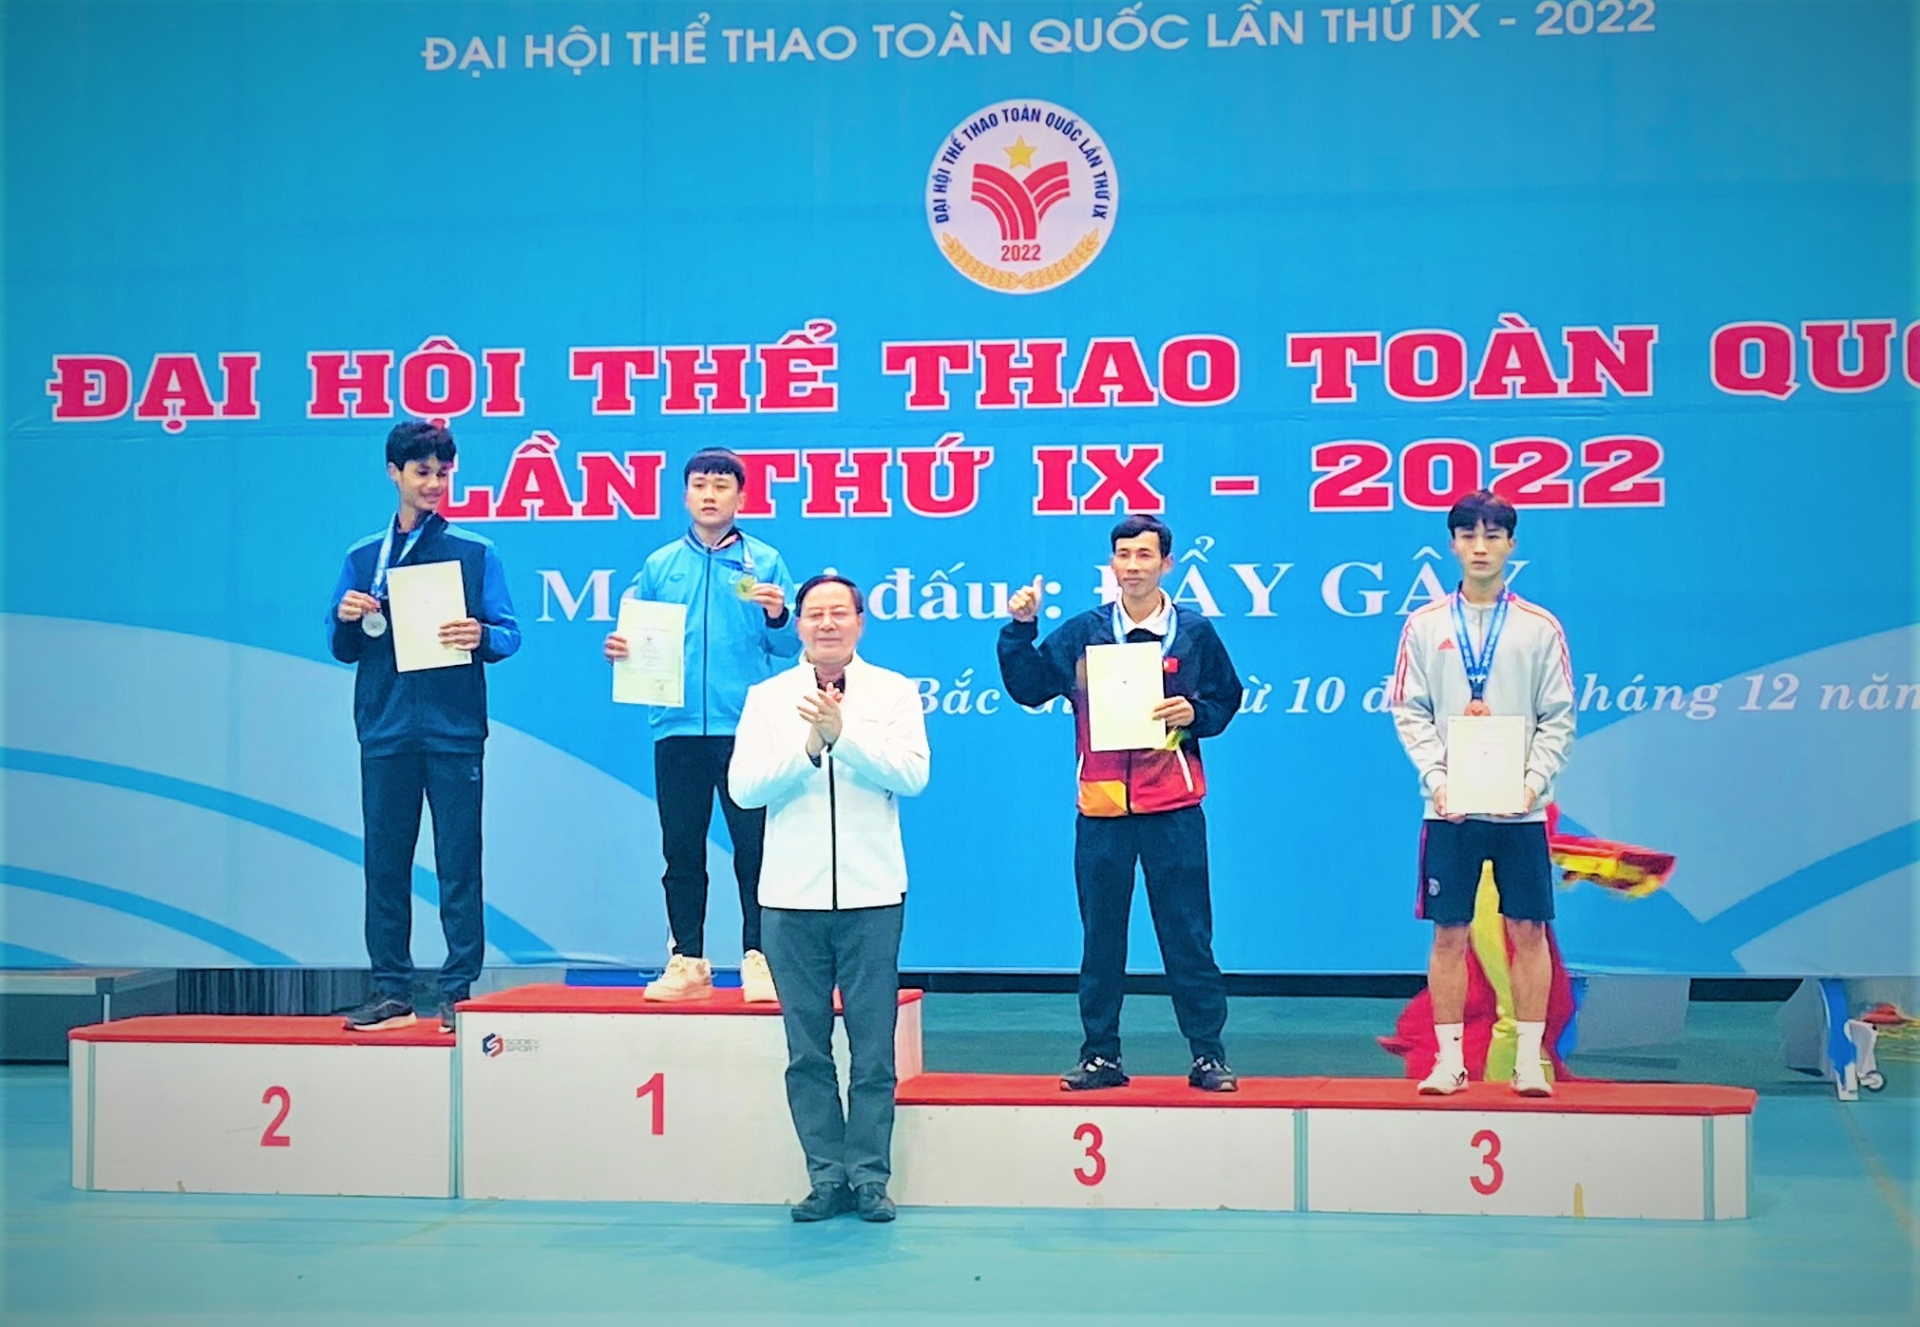 VĐV Hoàng Dương Đức của Lâm Đồng giành HC vàng môn đẩy gậy hạng cân 54 kg tại Đại hội Thể thao toàn quốc năm 2022